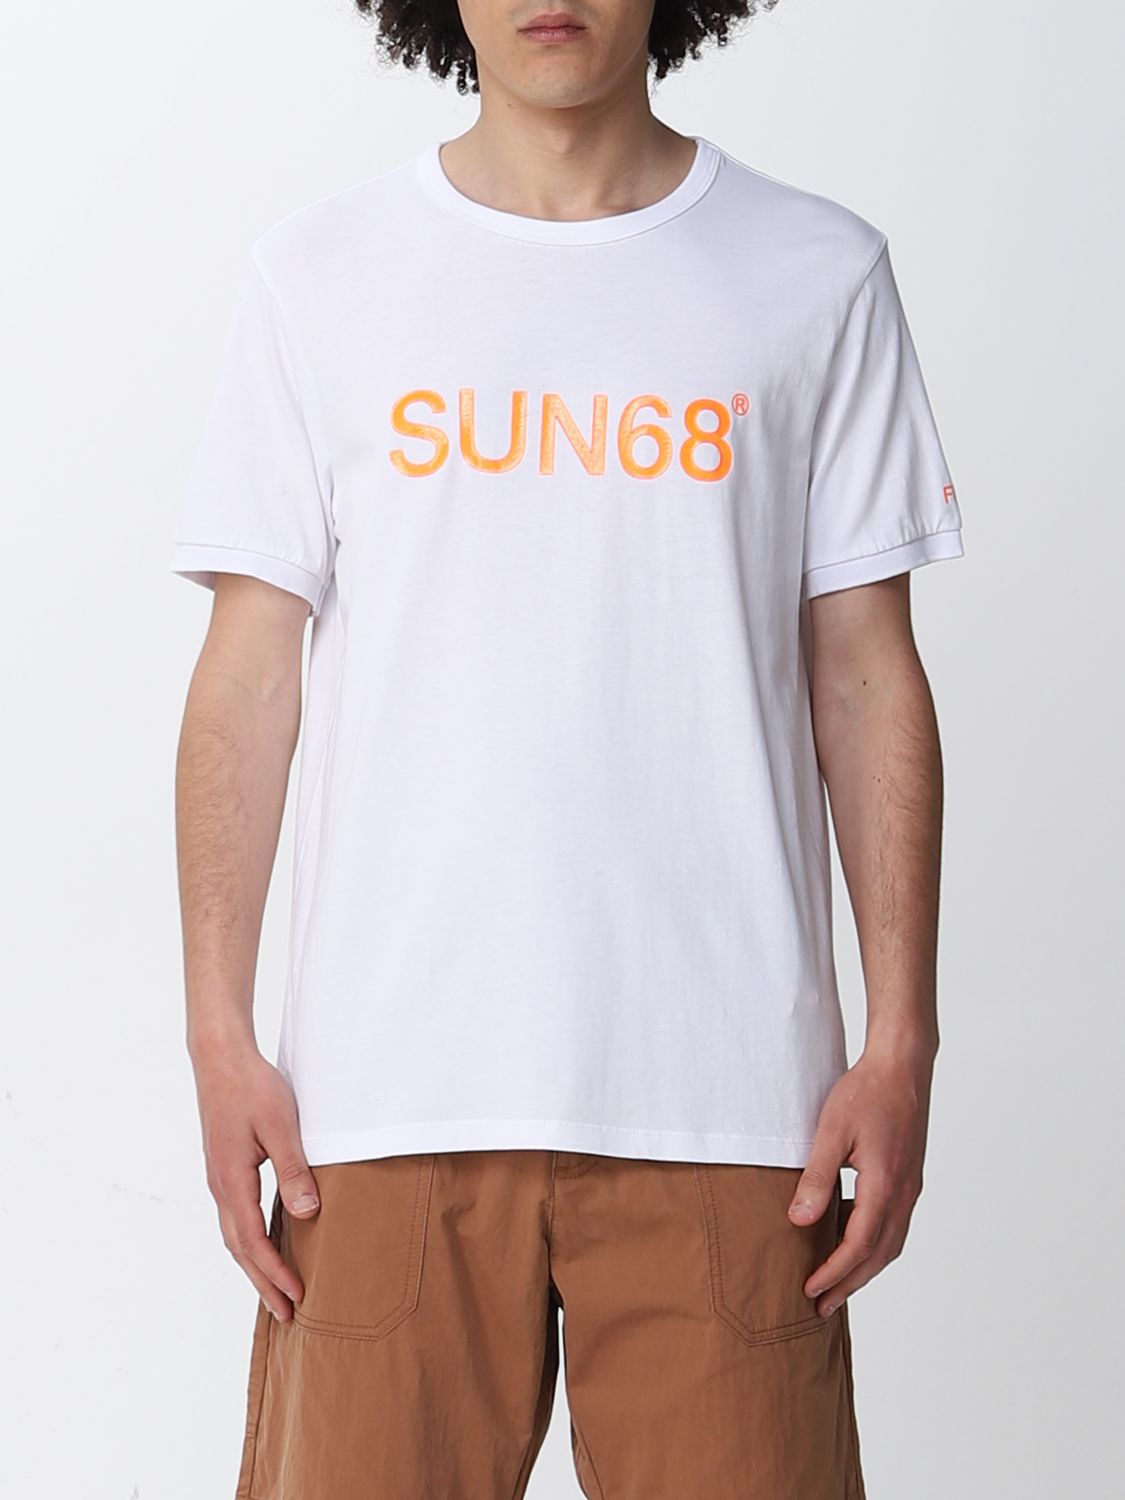 T-Shirt Sun 68: Sun 68 Herren T-Shirt weiß 1